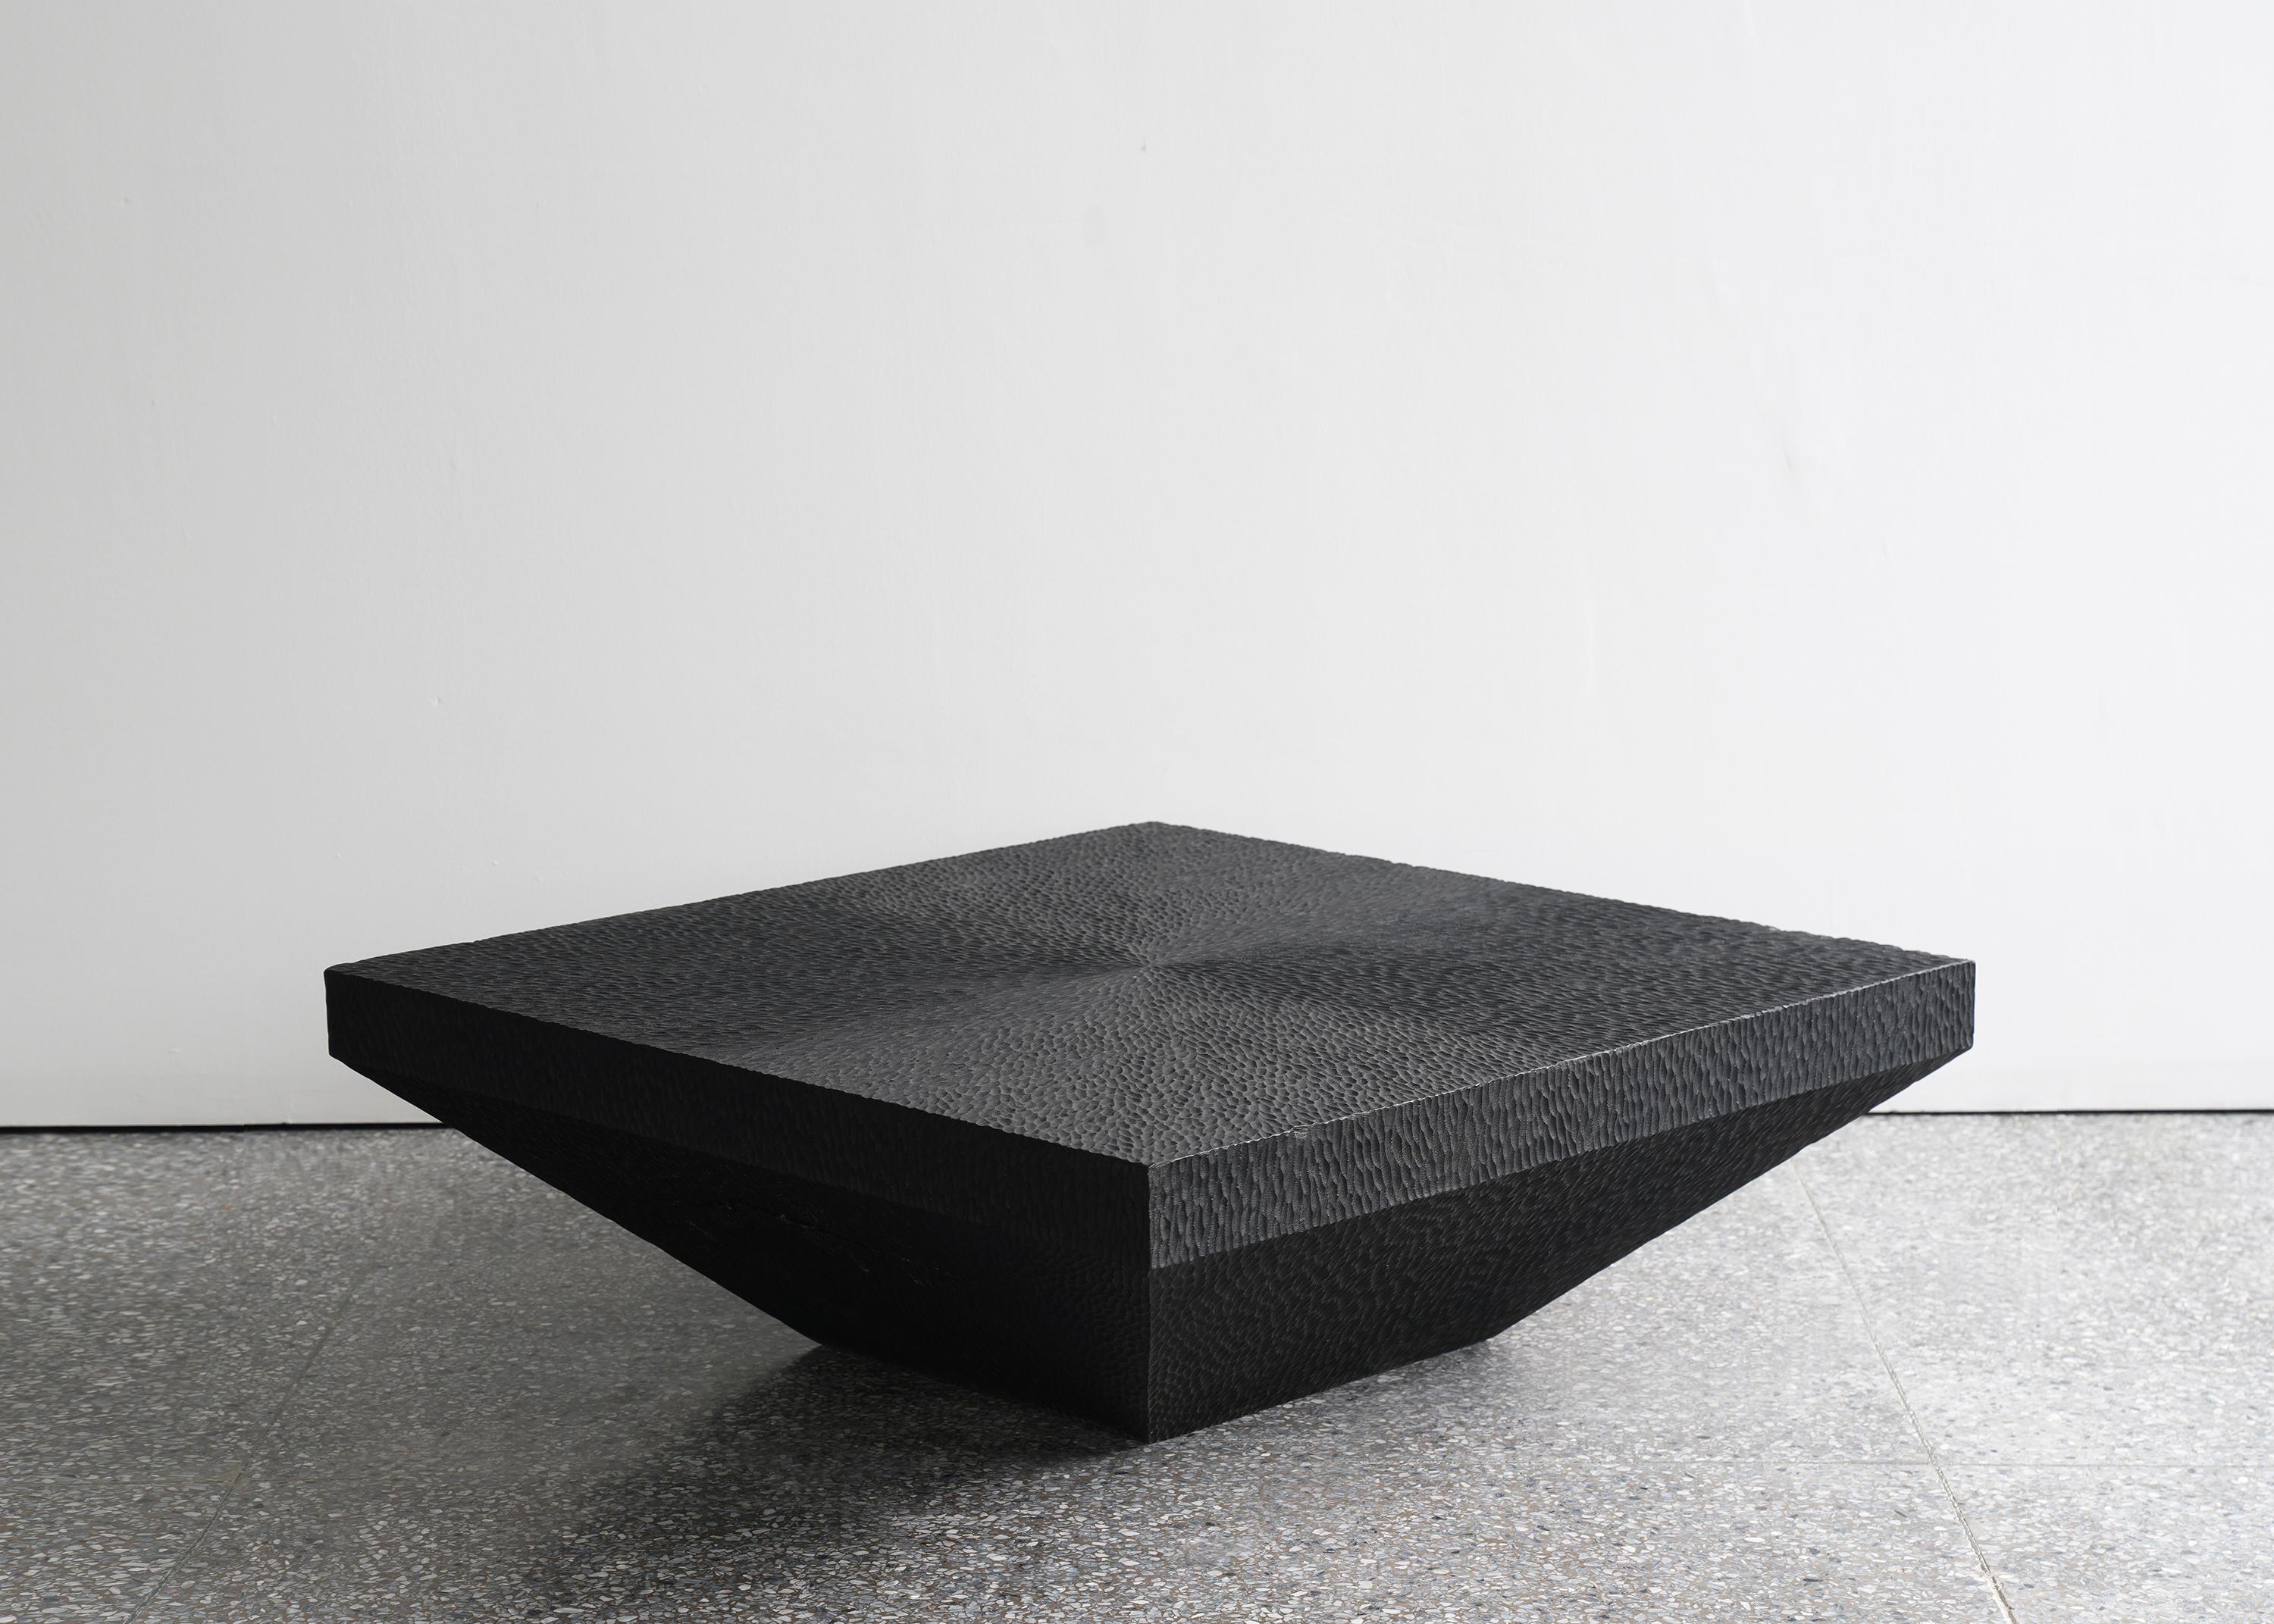 Table basse Epang 04 par Sing Chan
Dimensions : L 80 x P 80 x H 25 cm
MATERIAL : Sculpture manuelle, teck, peinture noire, cirage.

Sing Chan ( chinois : 陈星宇/Xingyu Chen) , le fondateur de SINGCHAN DESIGN, est né en 1990, et a été diplômé du